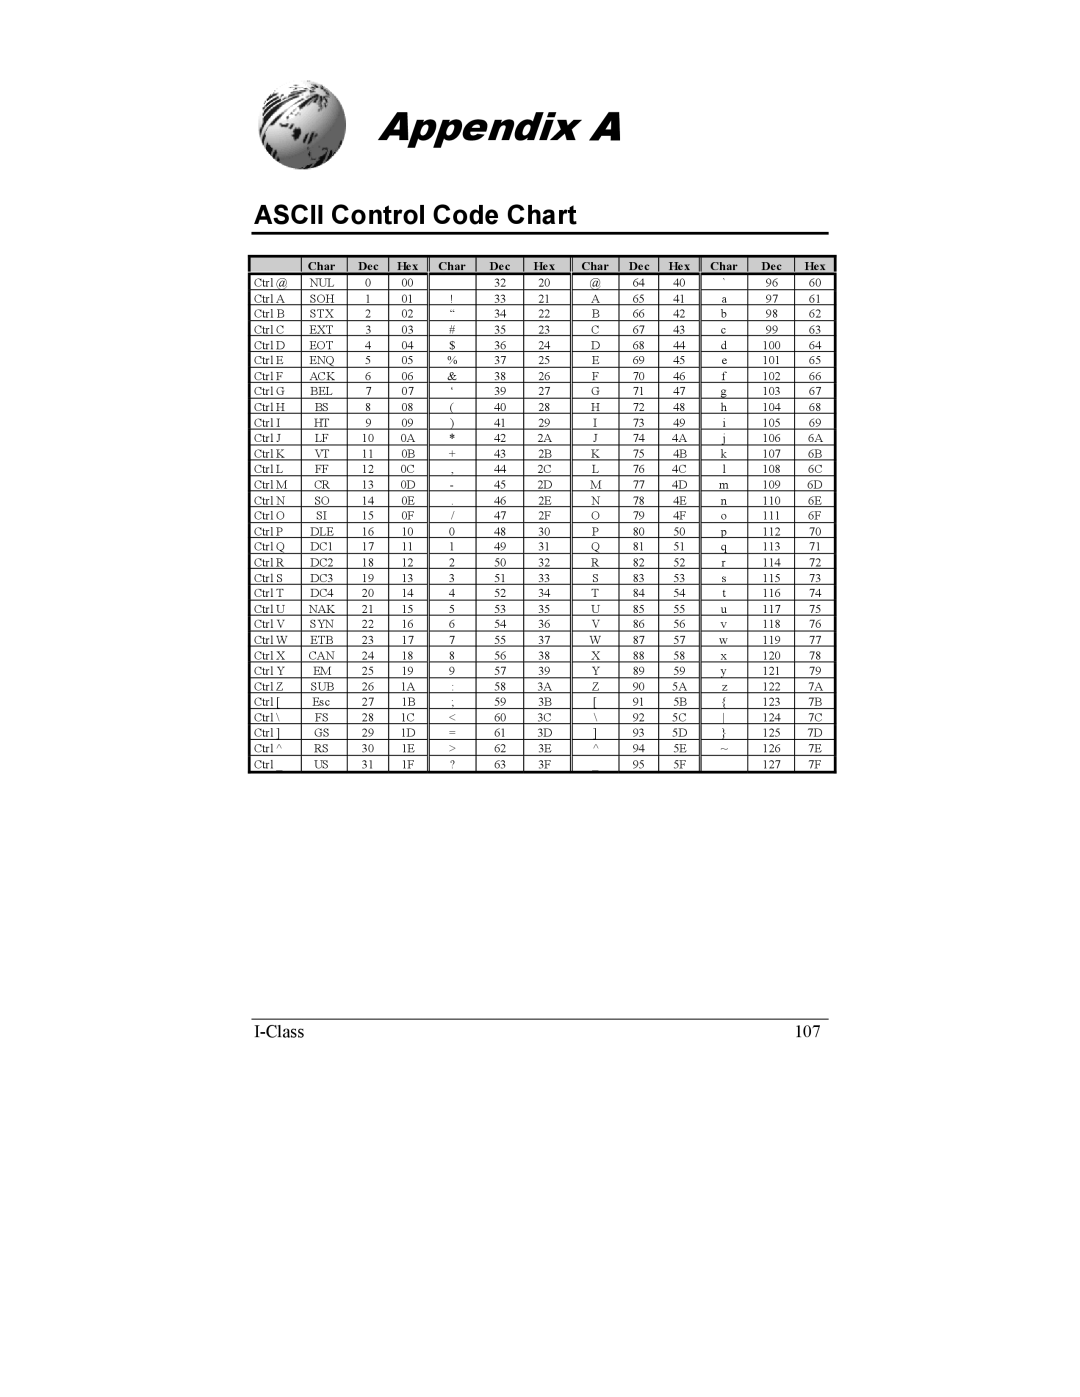 Datamax I-4208, I-4206 manual Appendix a, Ascii Control Code Chart 